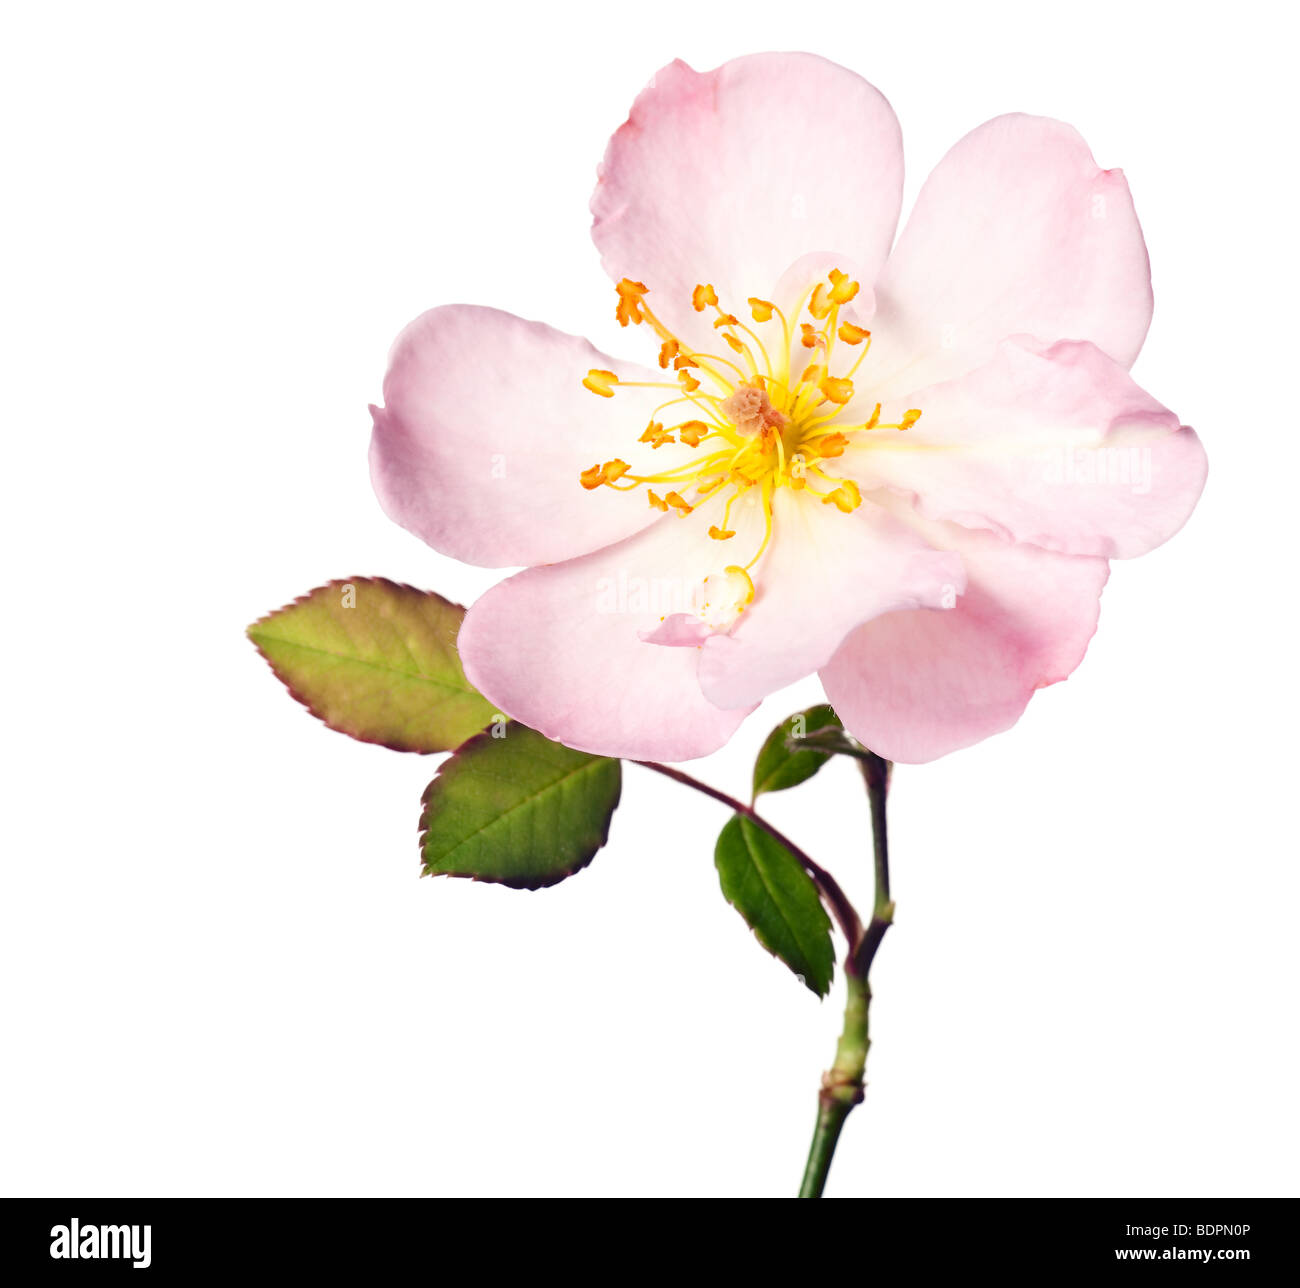 Rosa rosa de jardín aislado en un fondo blanco puro Foto de stock